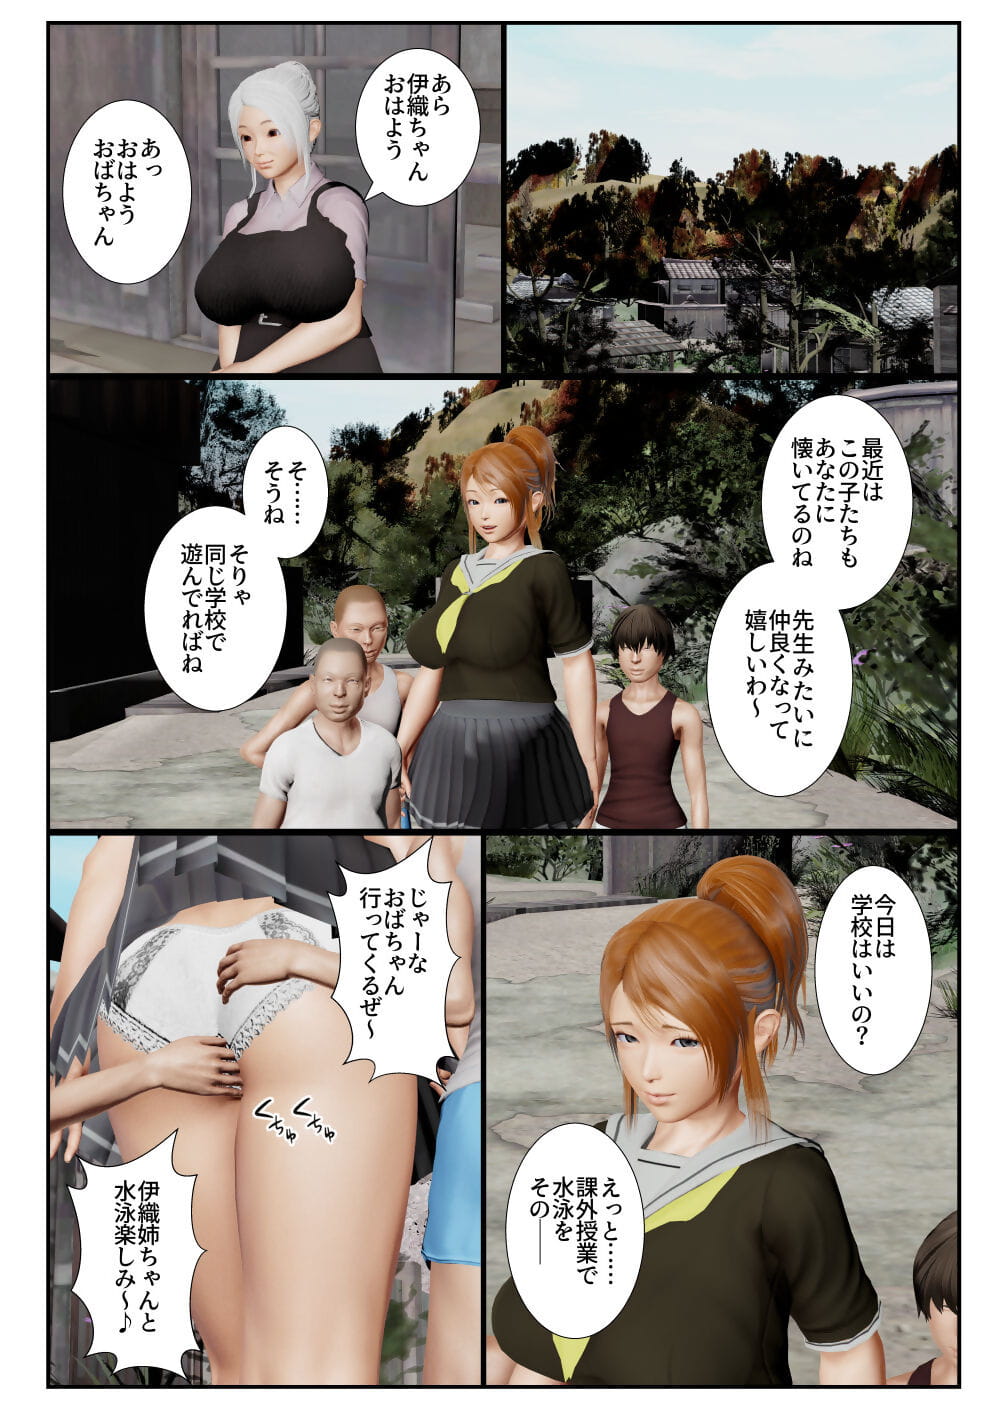 goriramu 冬马 啃噬 石里 恶魔 剑客 系列 一部分 5 page 1